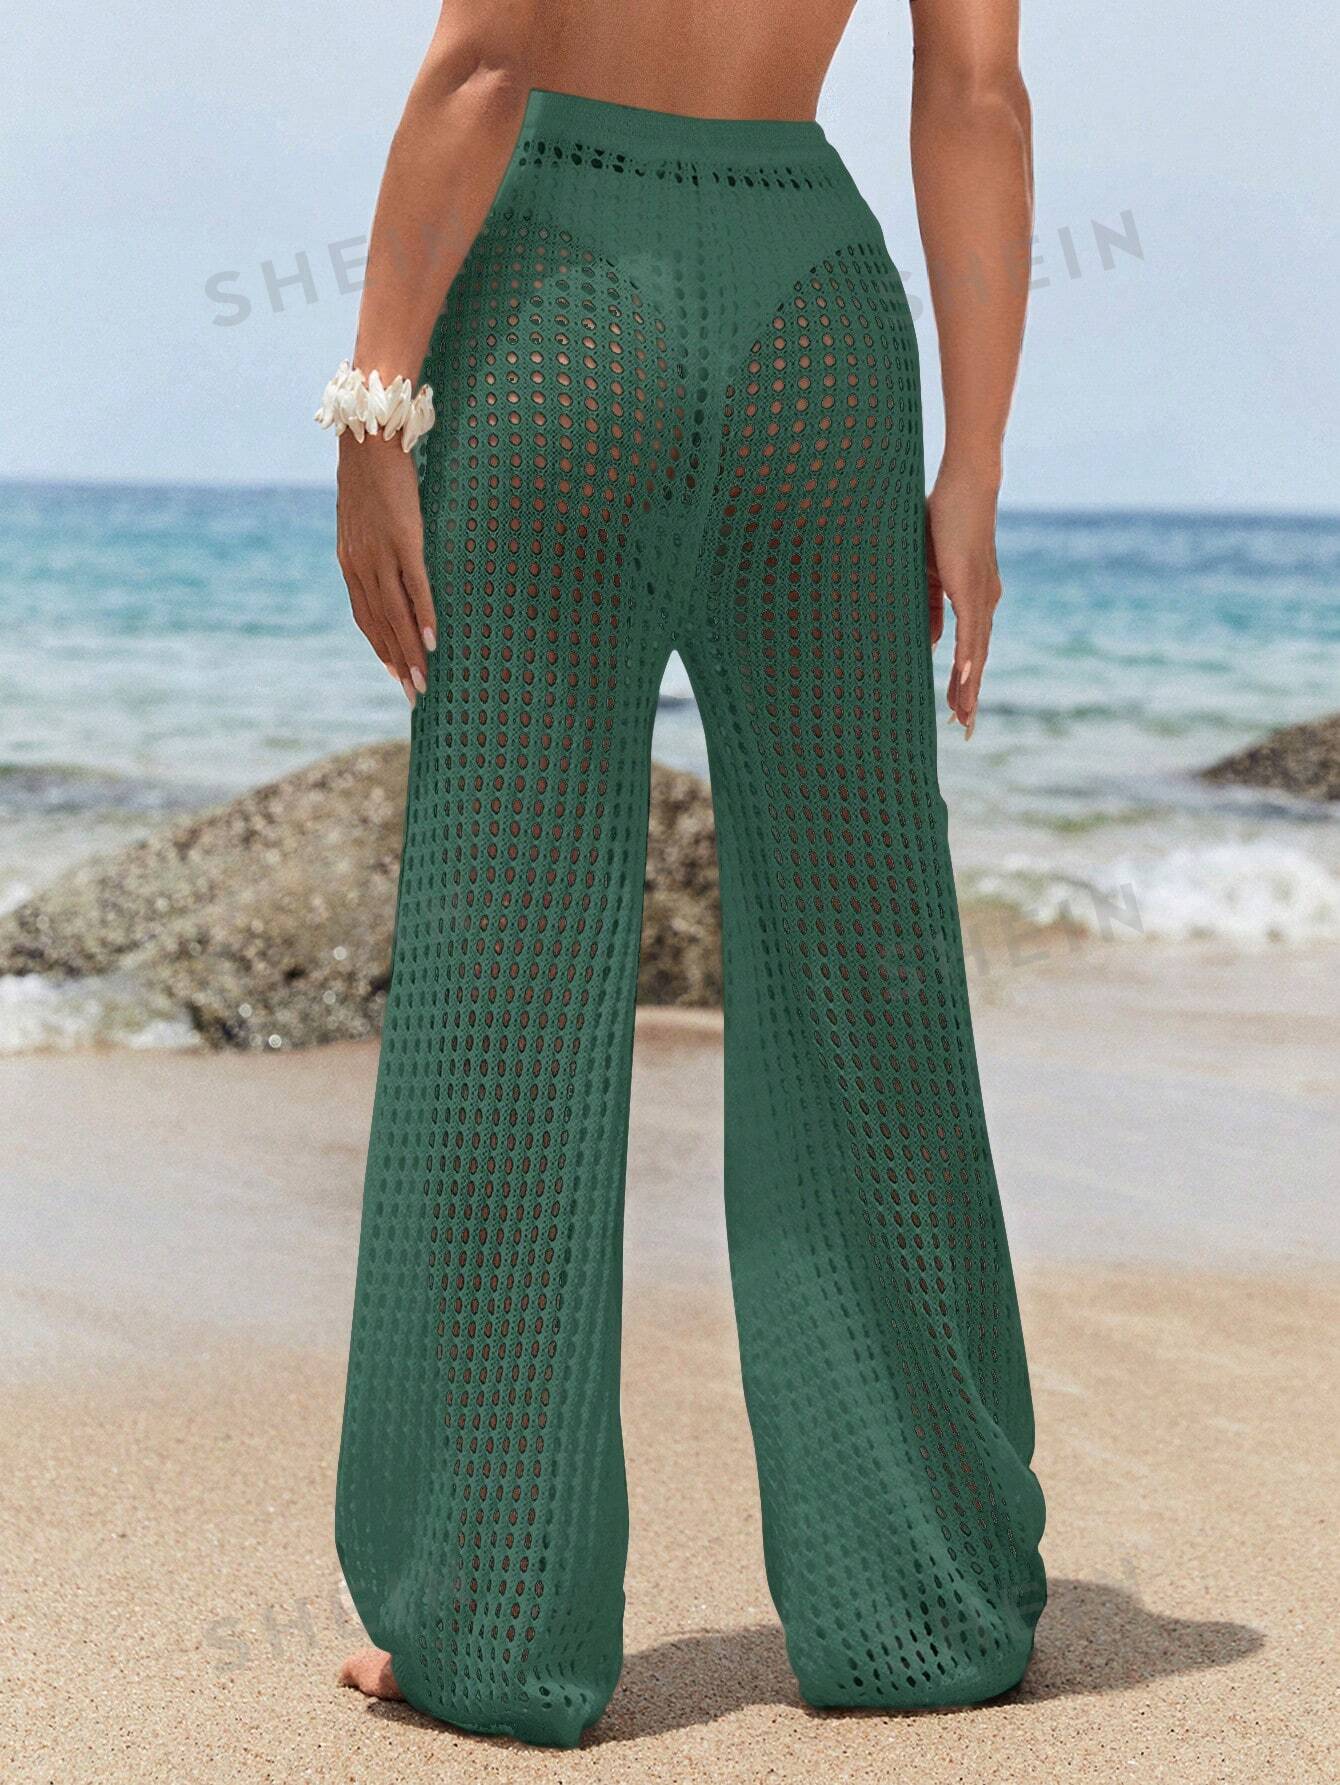 SHEIN Swim BohoFeel Женский зеленый ажурный пляжный комплект из топа и брюк на лето, оливково-зеленый